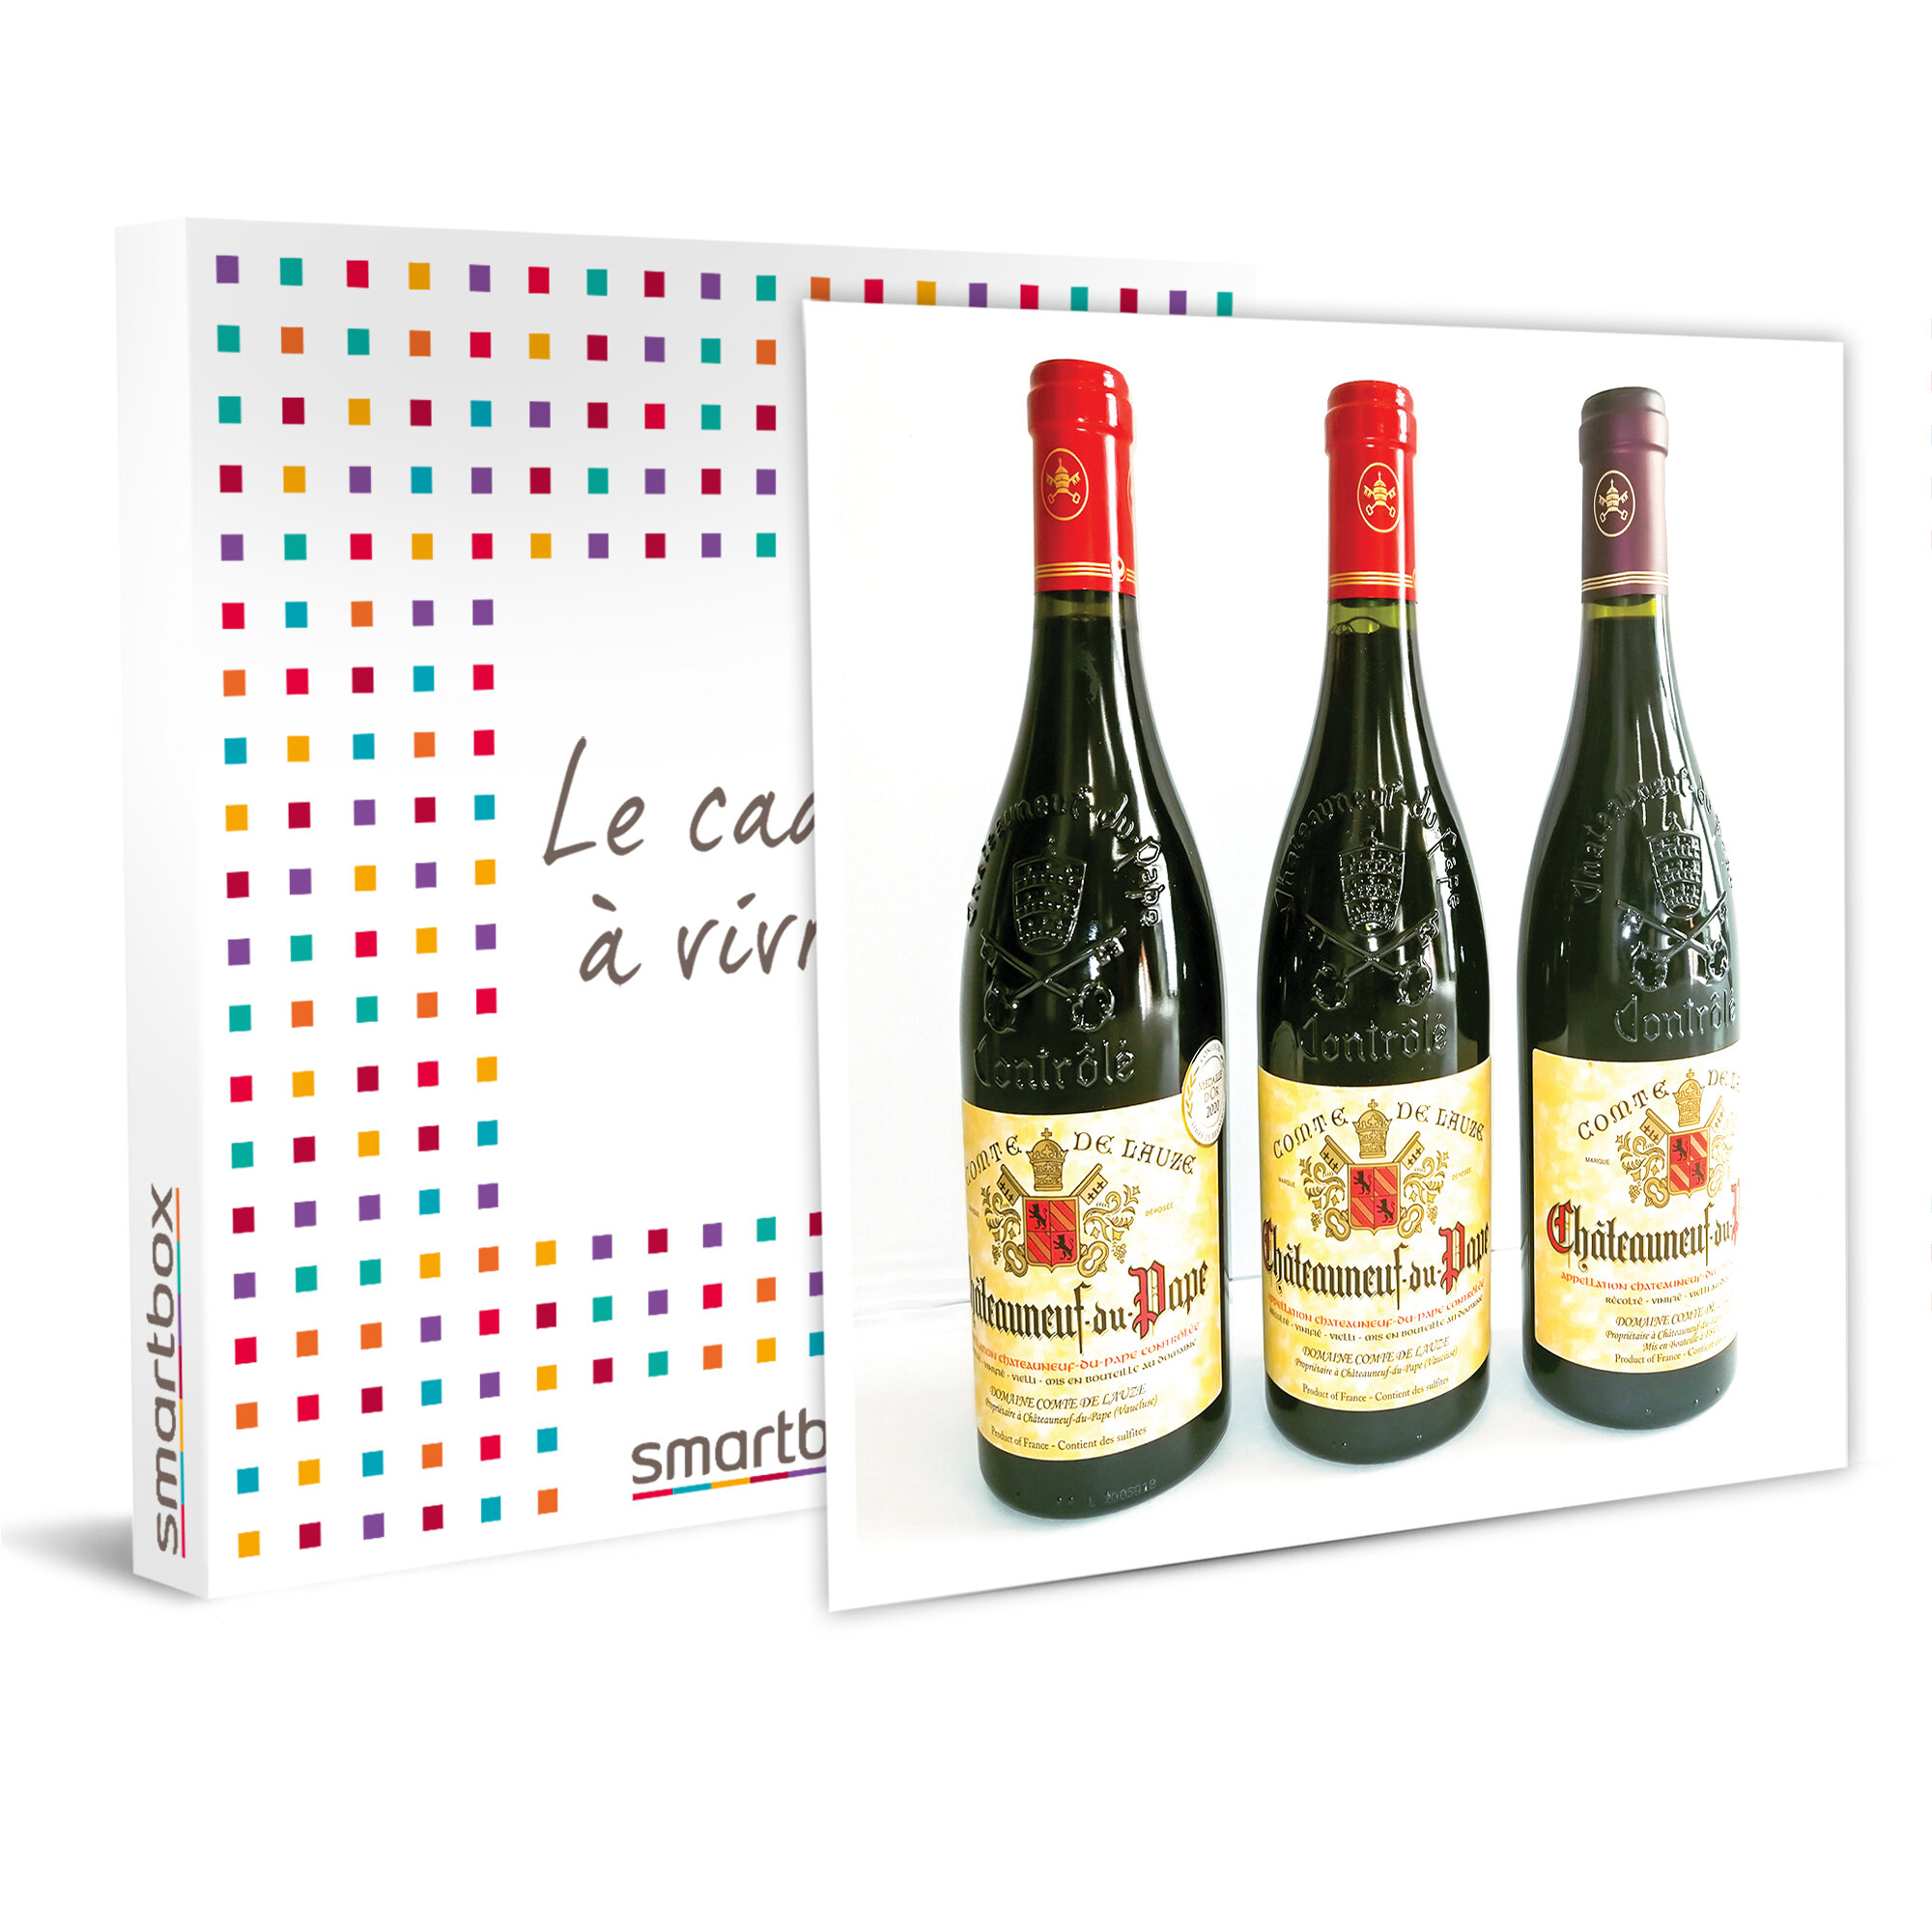 6 bouteilles de vin rouge Châteauneuf-du-Pape entre 2013 et 2019 livrées à domicile